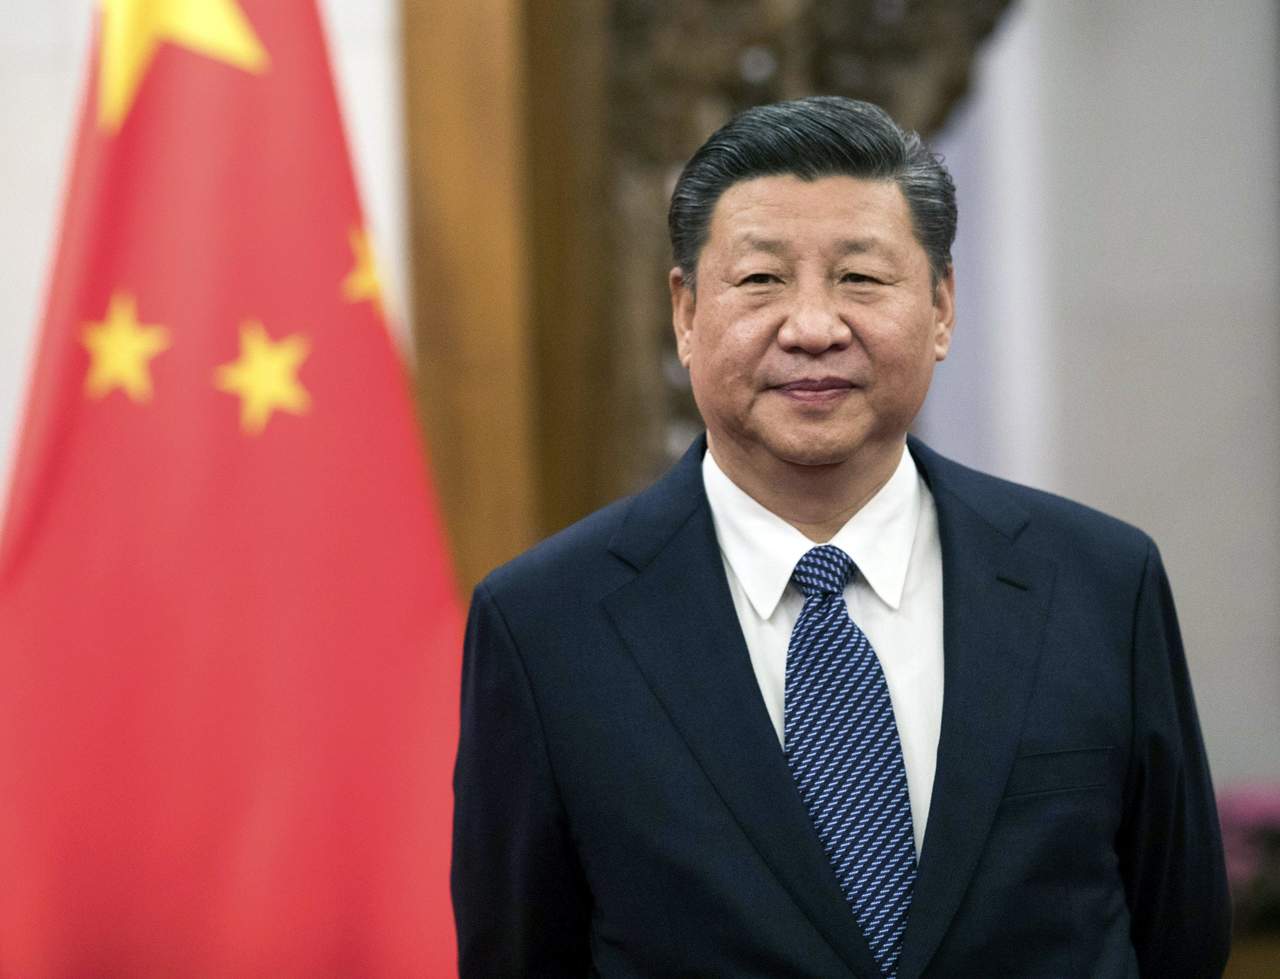 Evita EU criticar la posible perpetuación de Xi Jinping en el poder chino. Noticias en tiempo real